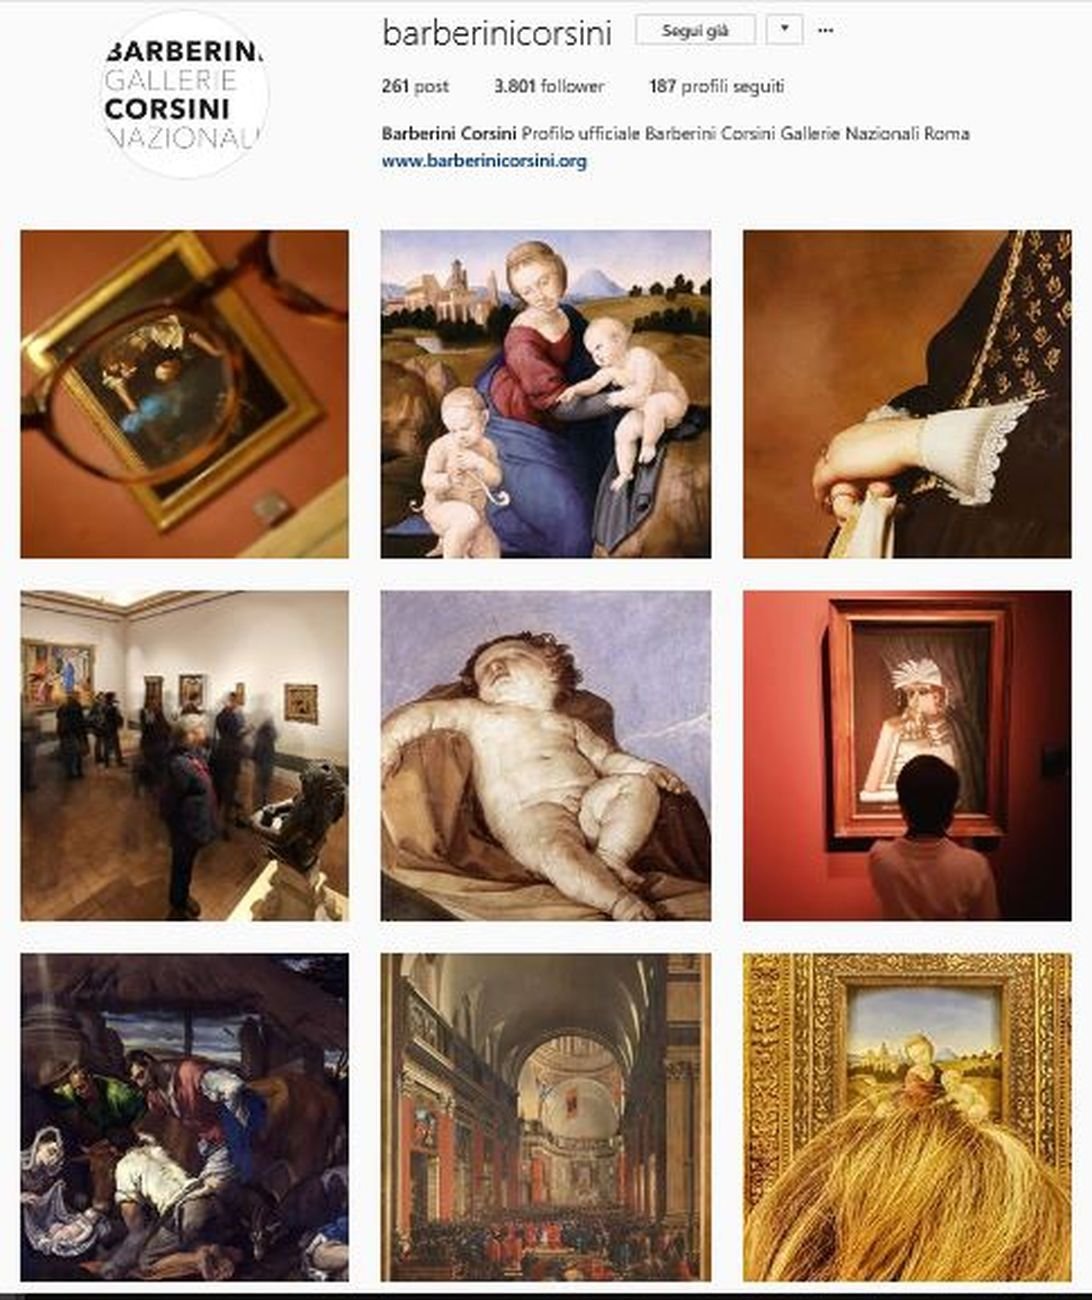 Il sito Internet delle Gallerie Nazionali di Arte Antica di Roma Palazzo Barberini e Galleria Corsini